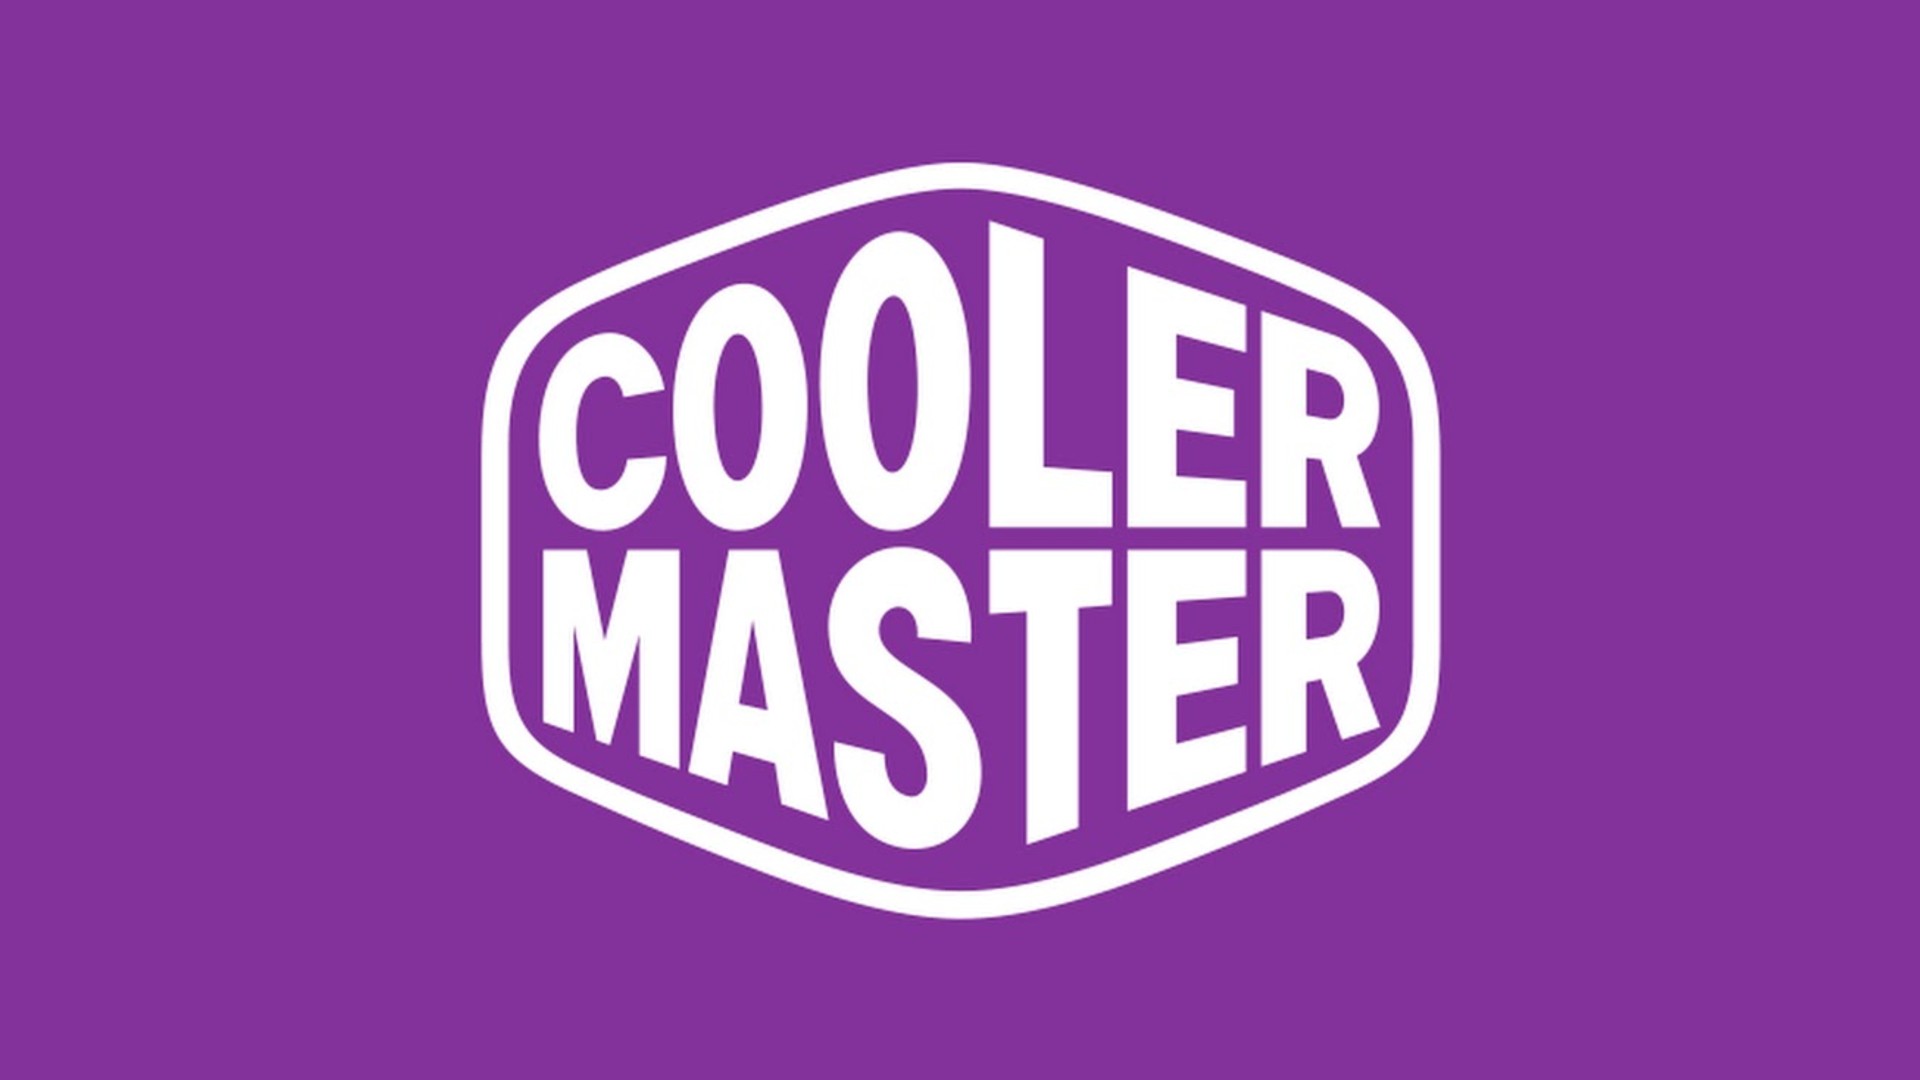 Gusto kang singilin ng Cooler Master ng $2,000 para sa isang nanginginig na gaming chair